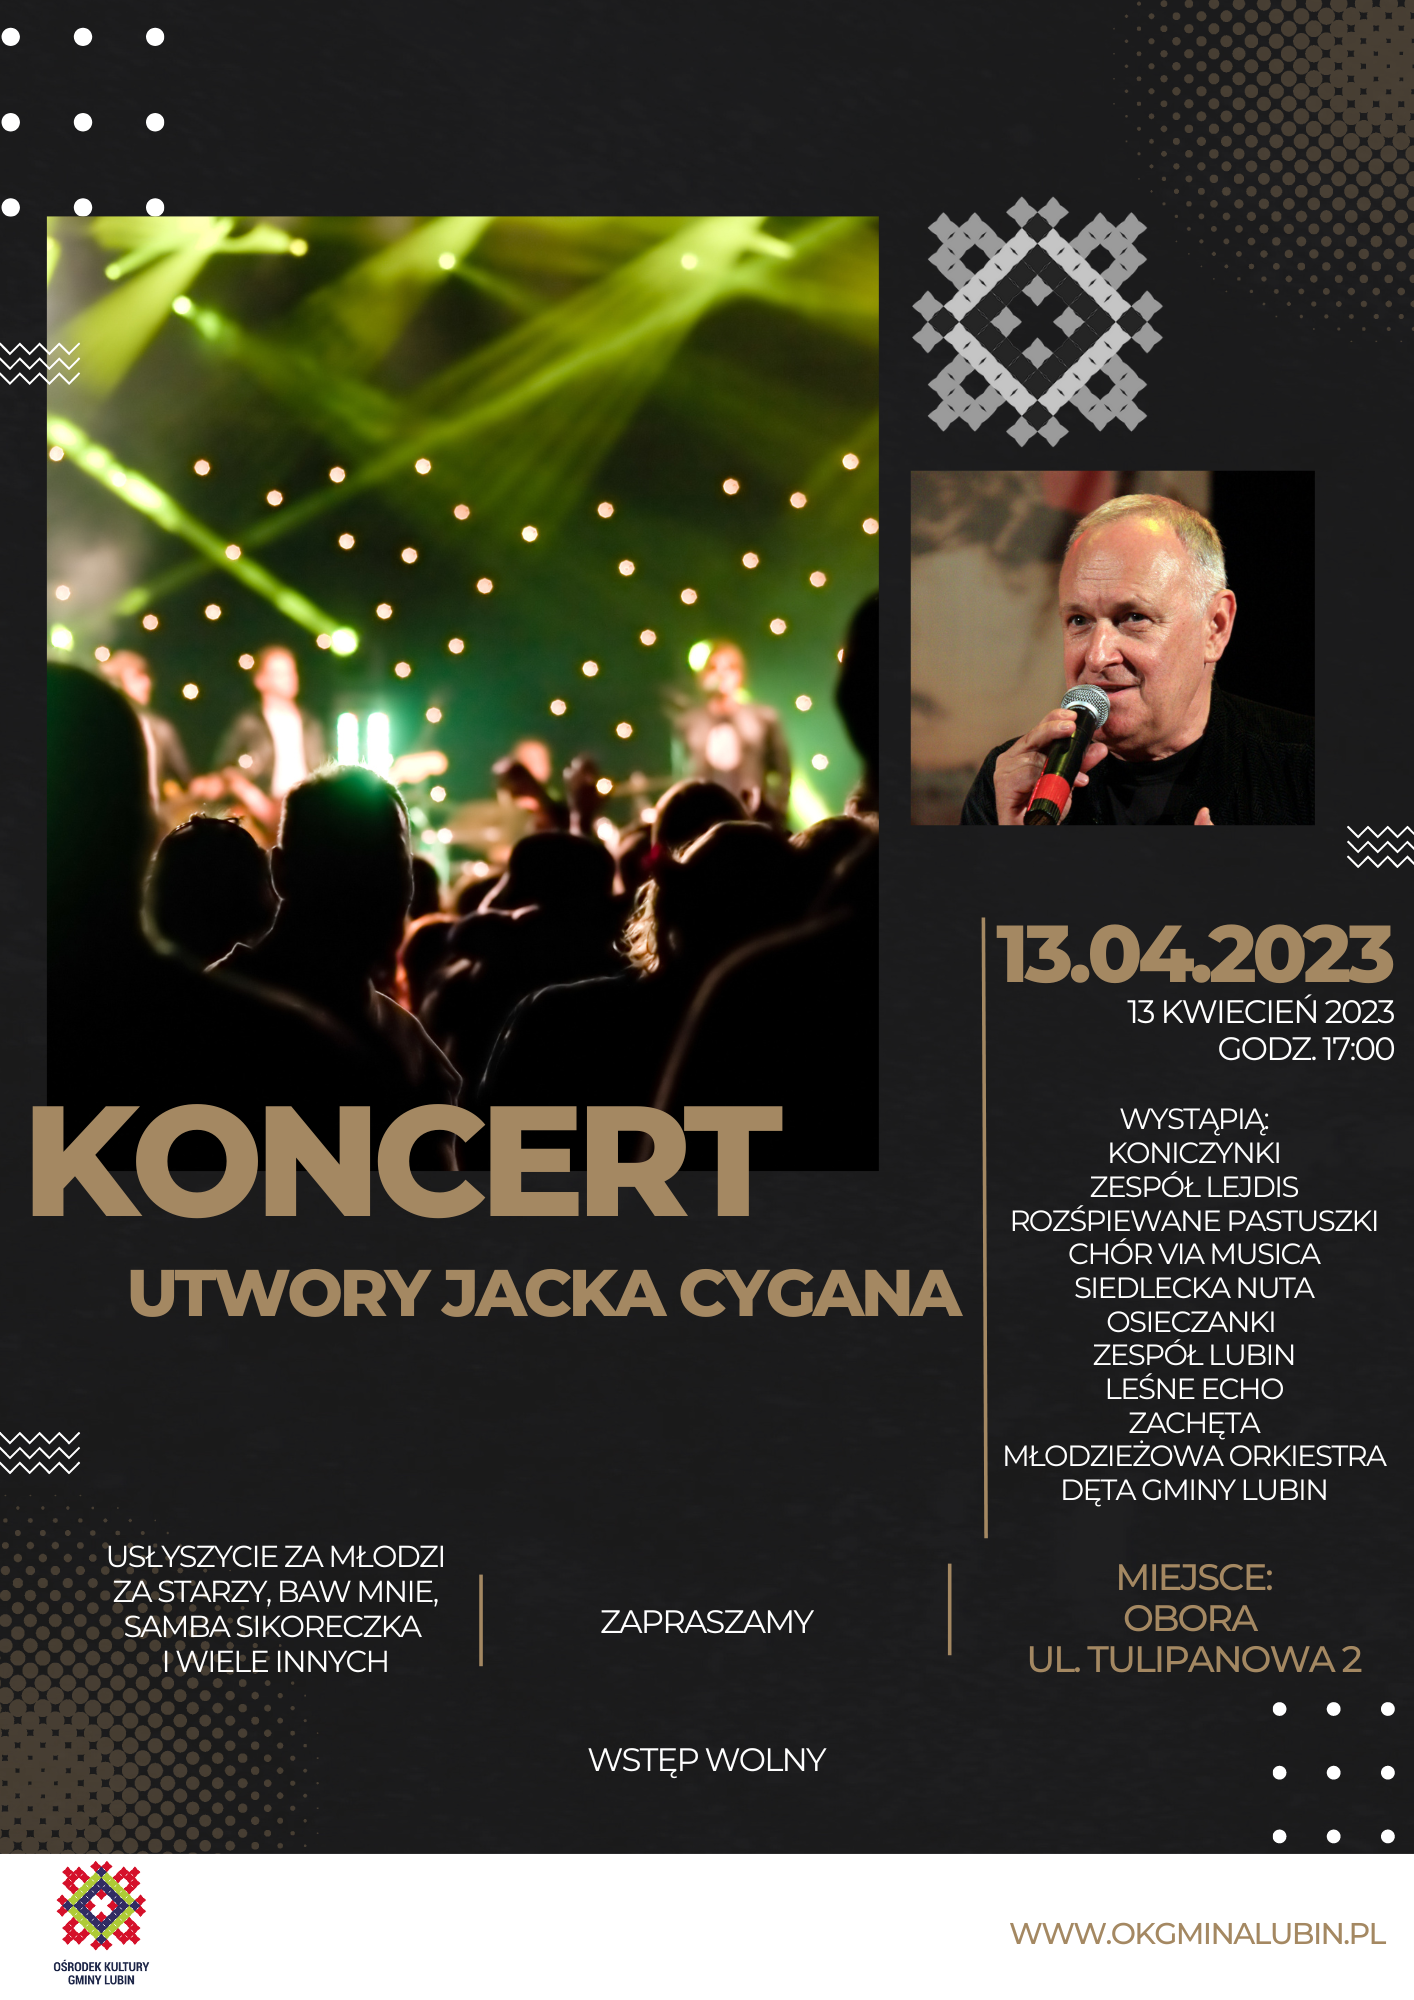 koncert Jacka Cygana w terminie 13.04.2023 r. w oborze zrealizowany przez zespoły okgl